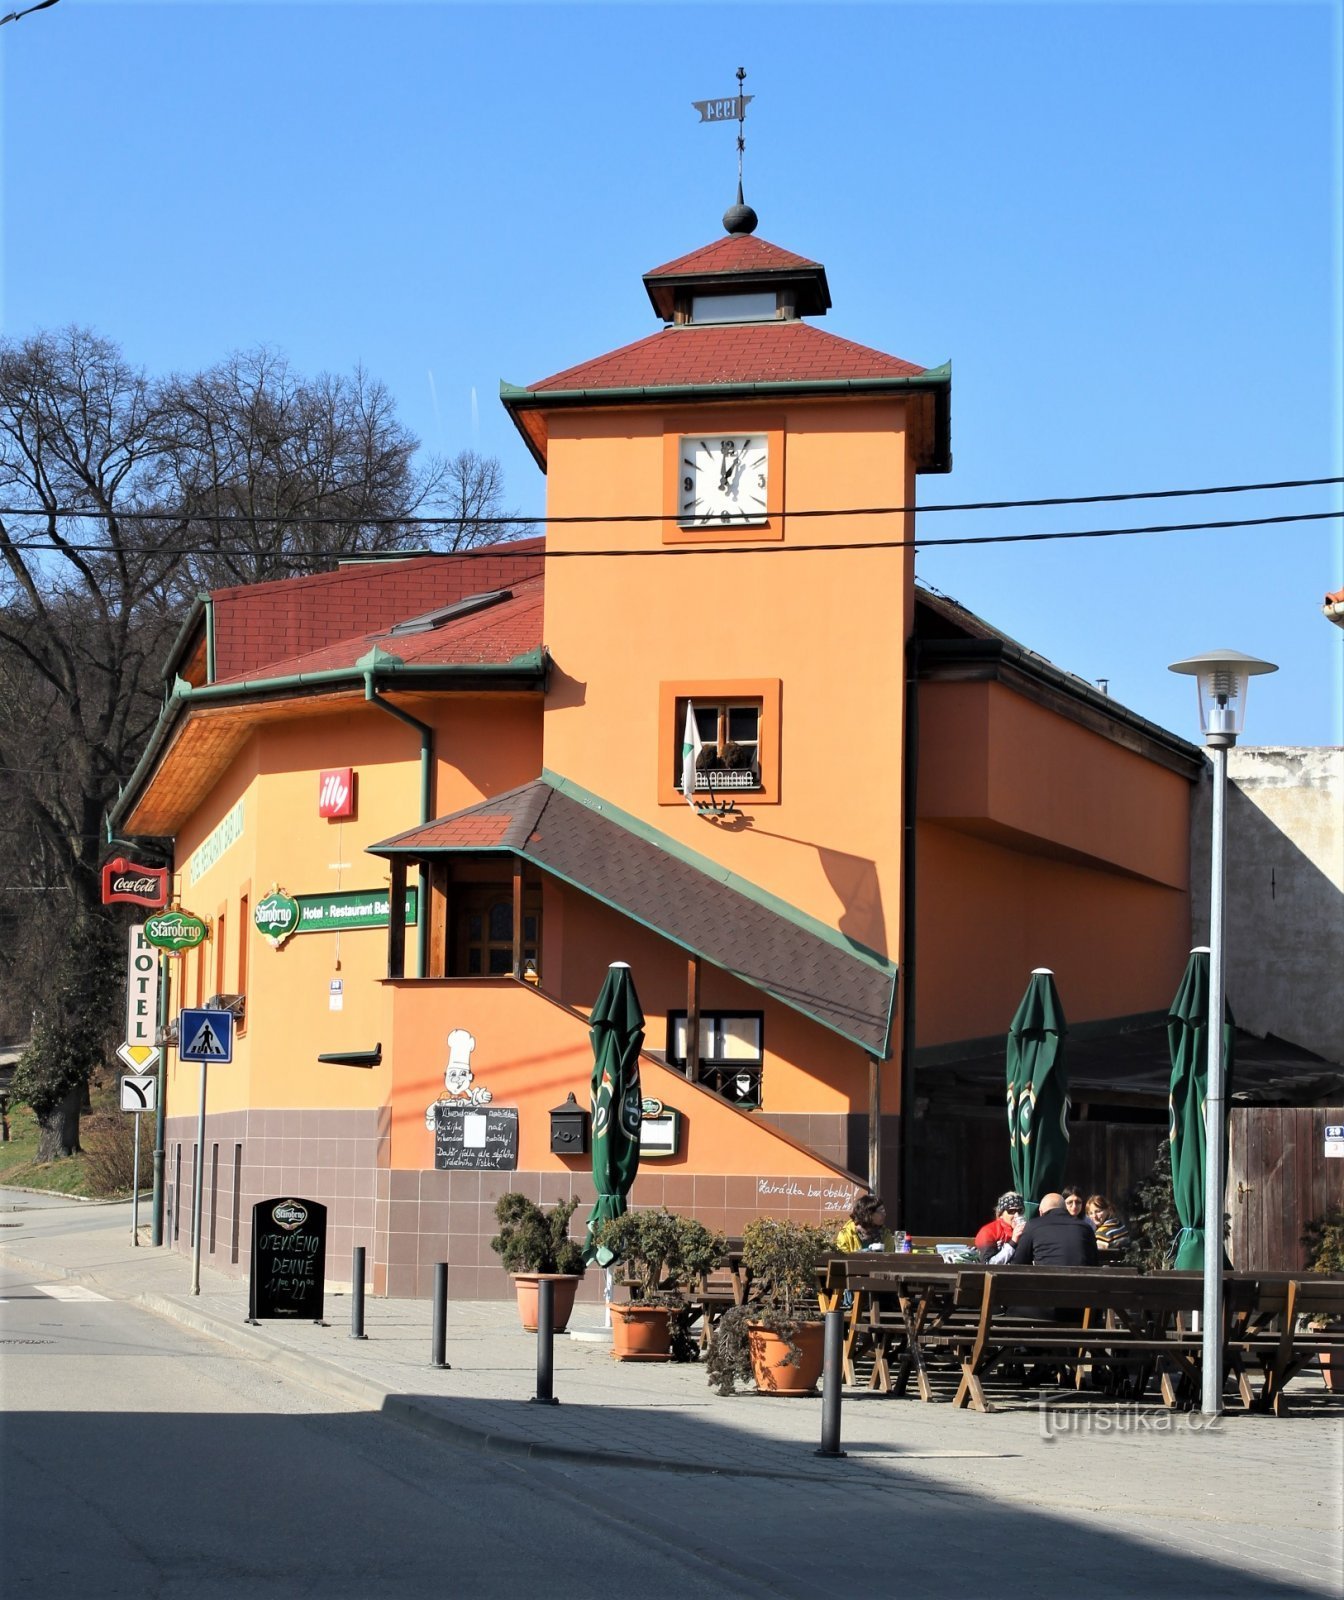 Turen starter i landsbyen Lelekovice nær hotellet Babí lom